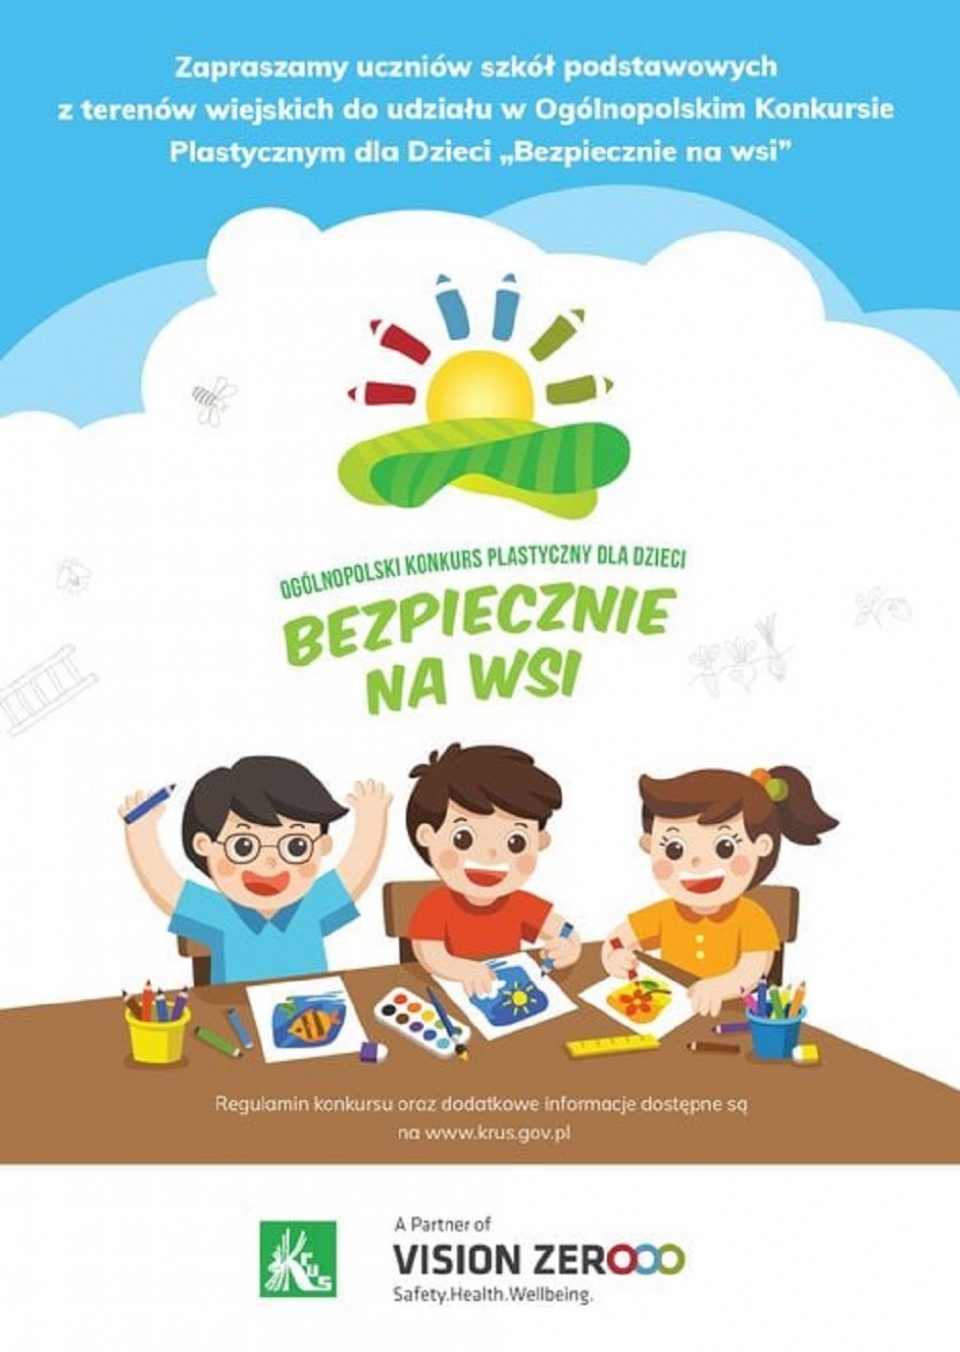 Konkurs dla Dzieci organizowany przez KRUS